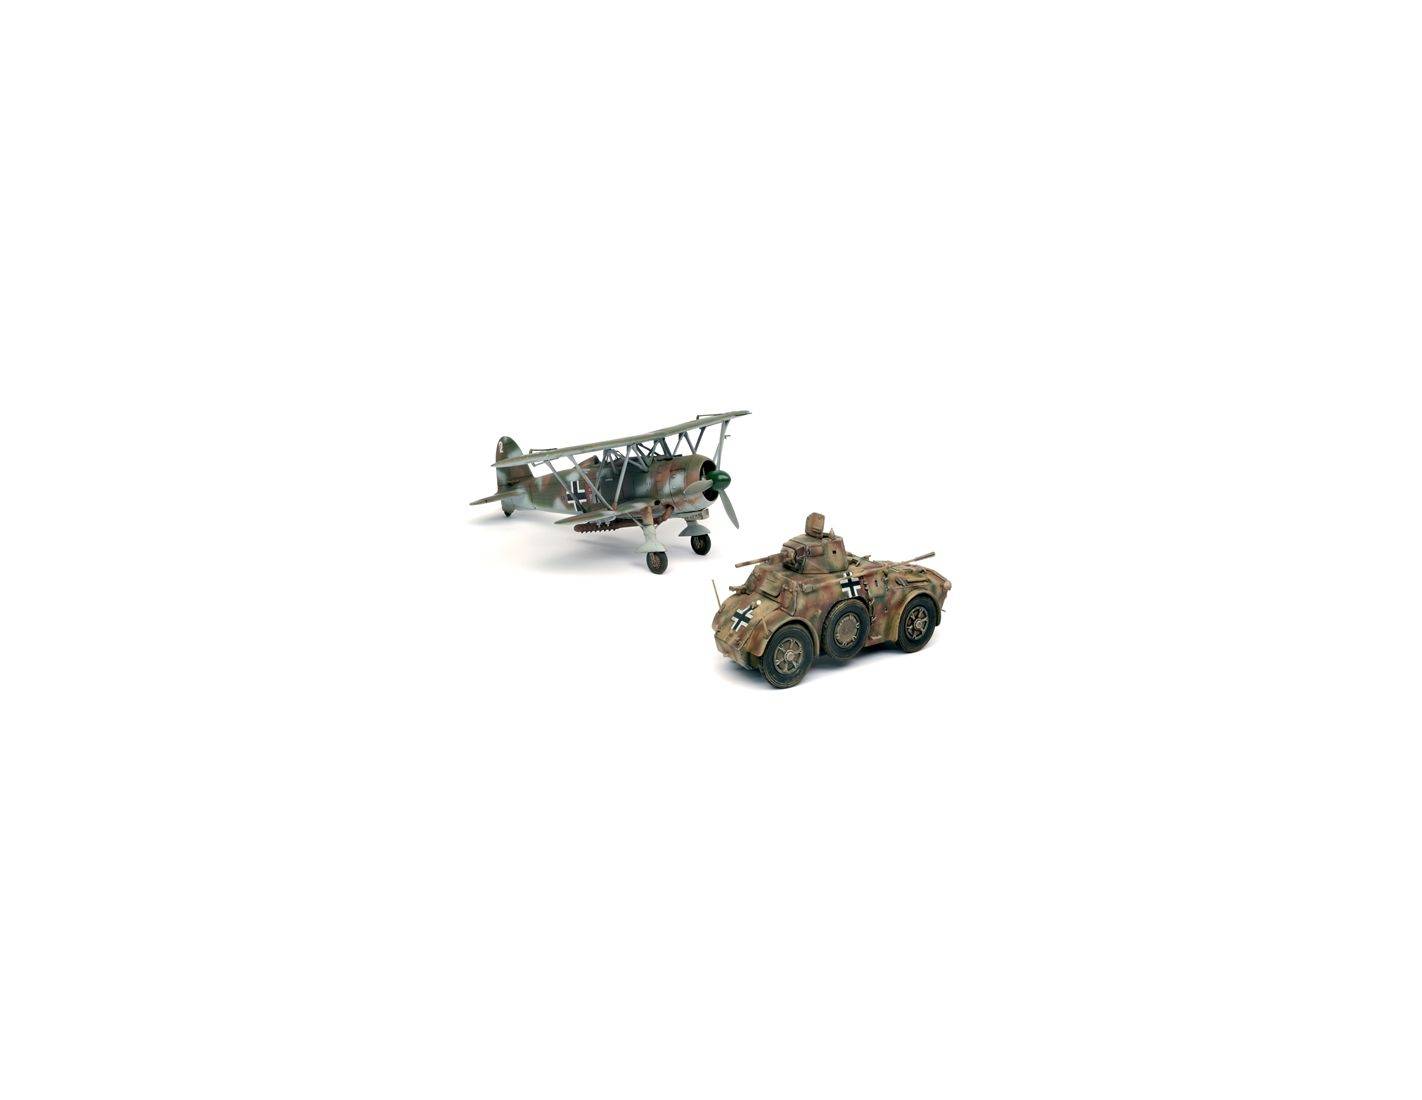 cr42 lw kit 1:48 mezzi militari scala italeri Autoblinda ab41 